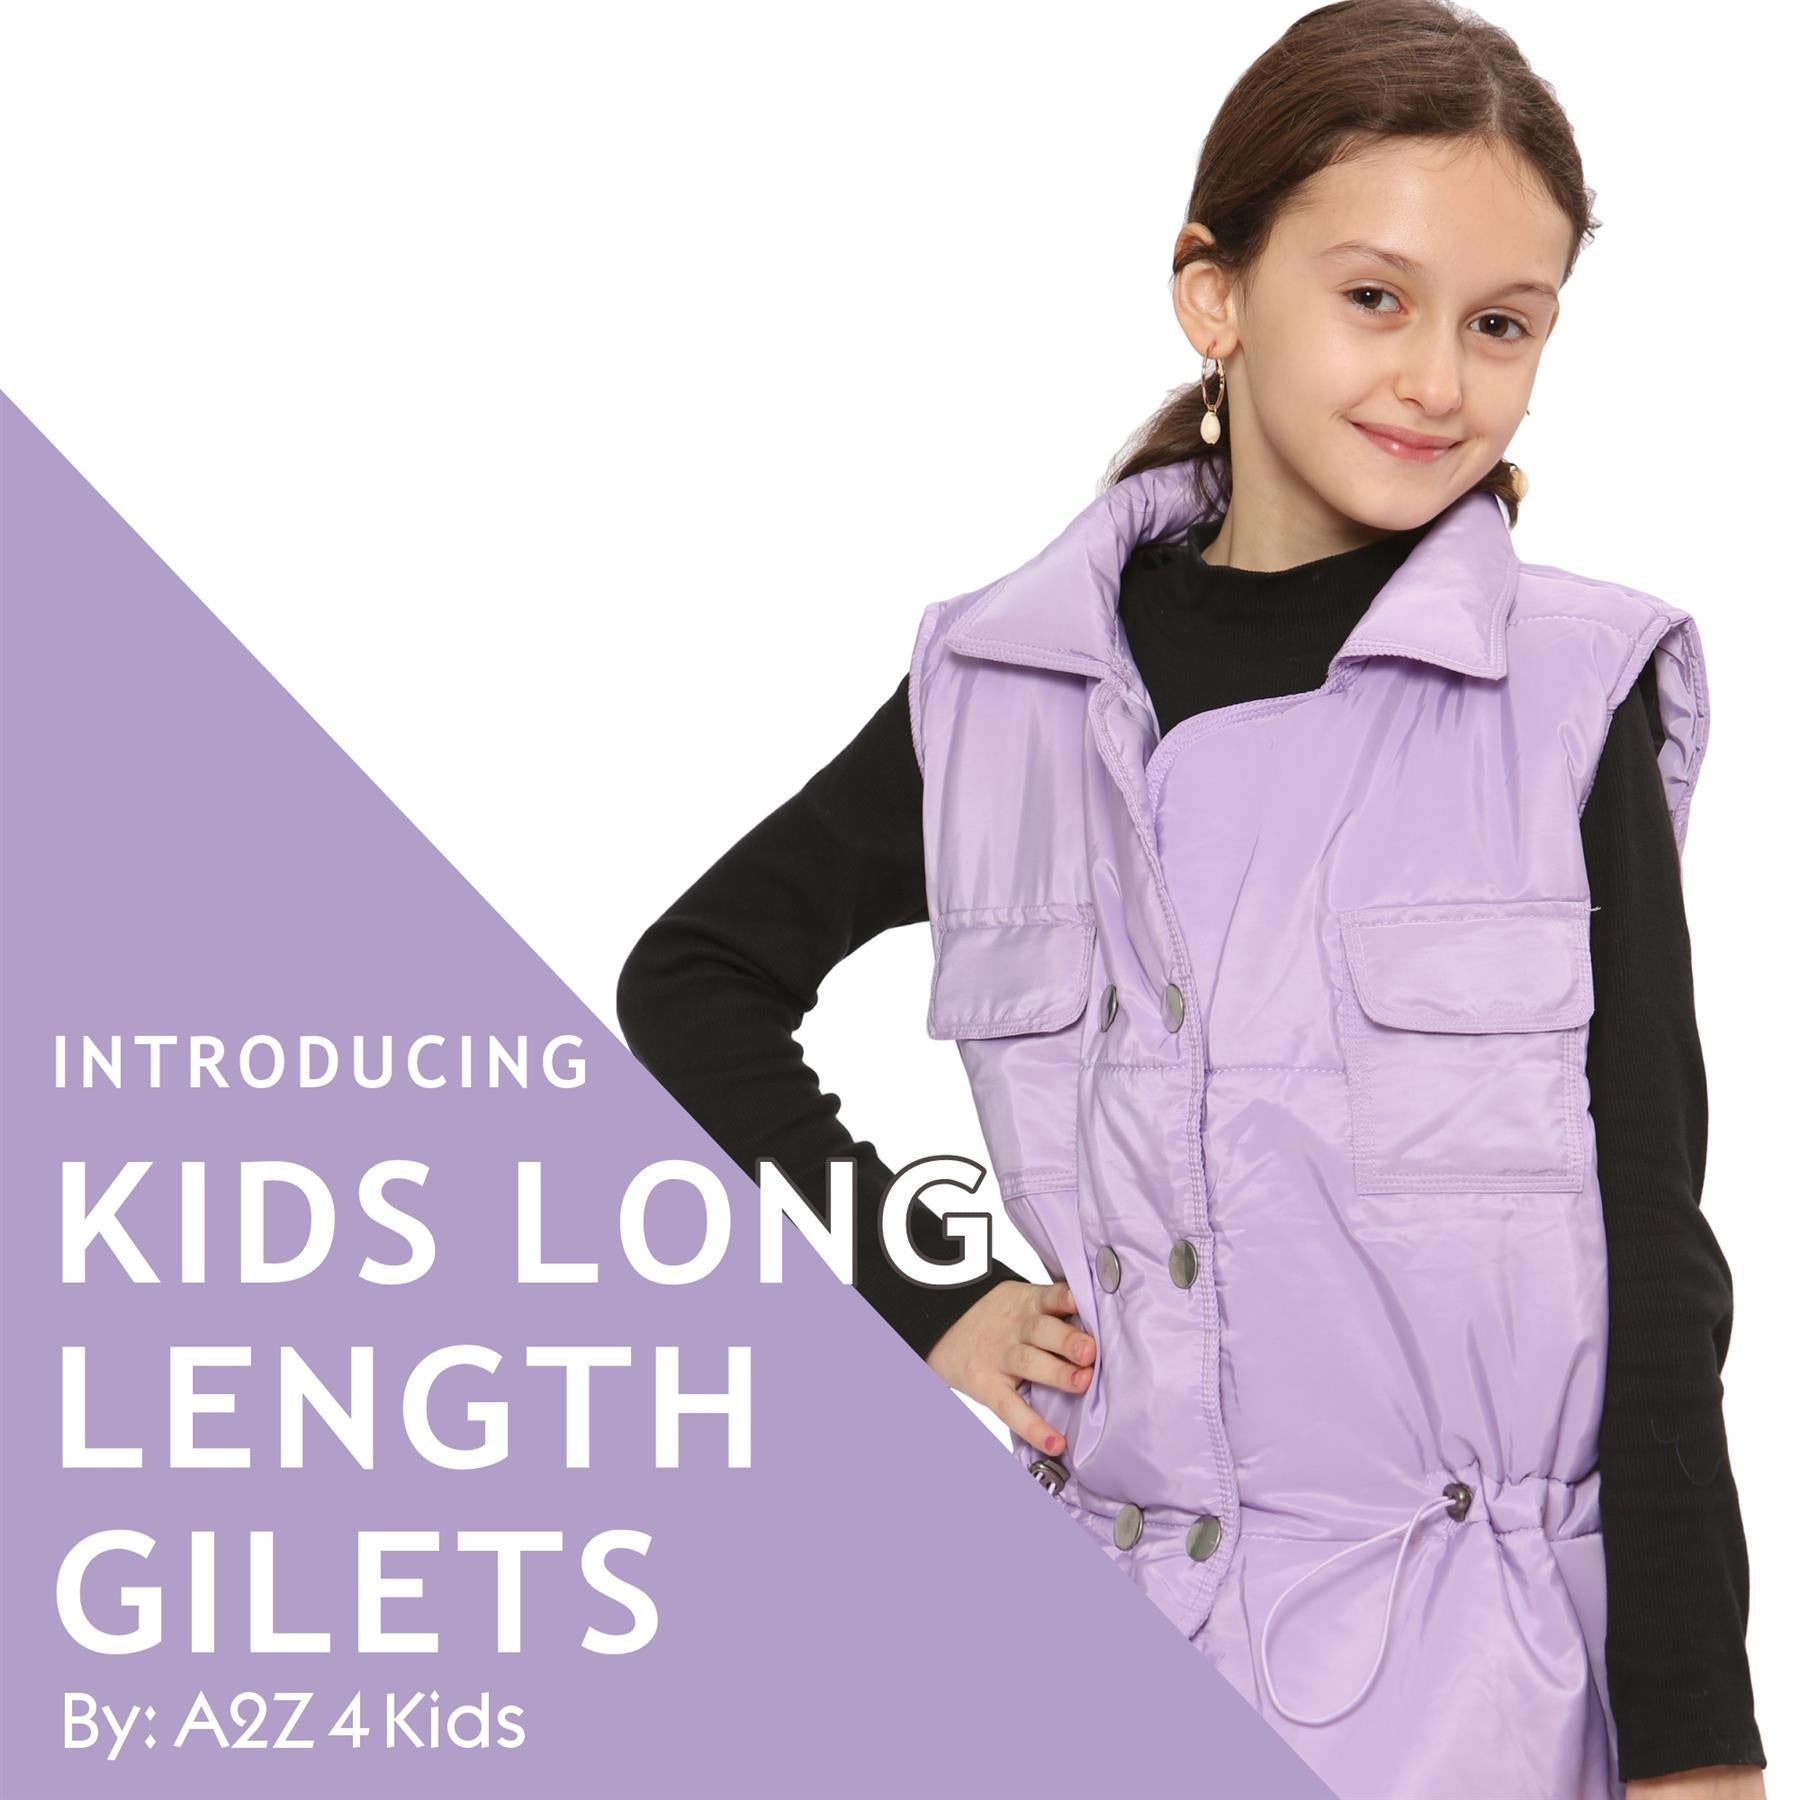 Kids Girls Lilac Oversized Style Sleeveless Jacket